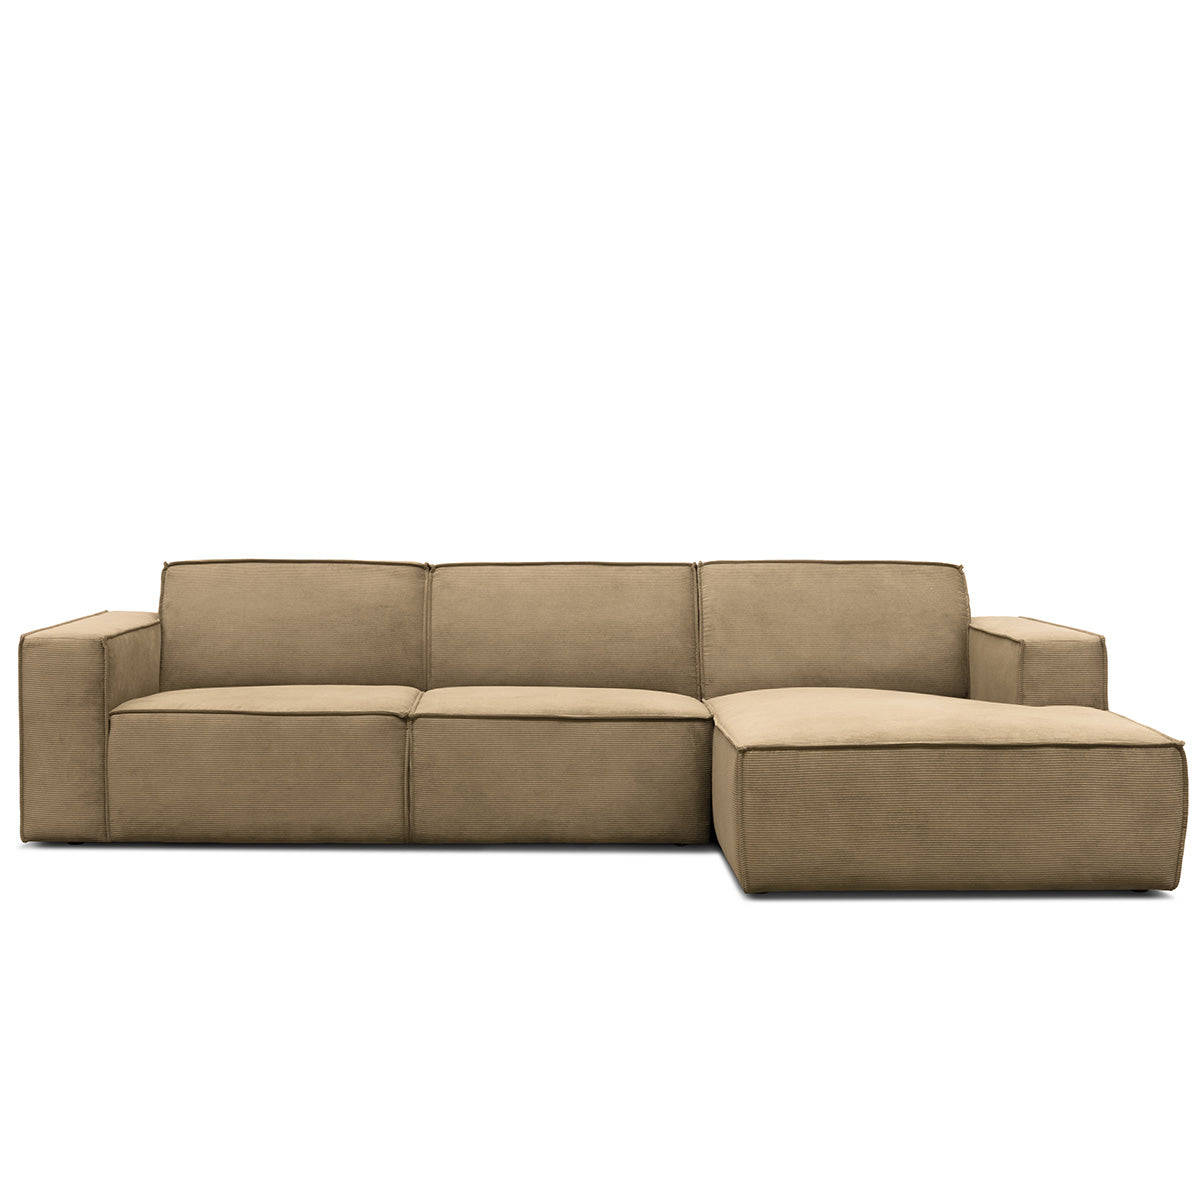 Lyon højrevendt sofa med chaiselong, fløjl - Møbelkompagniet